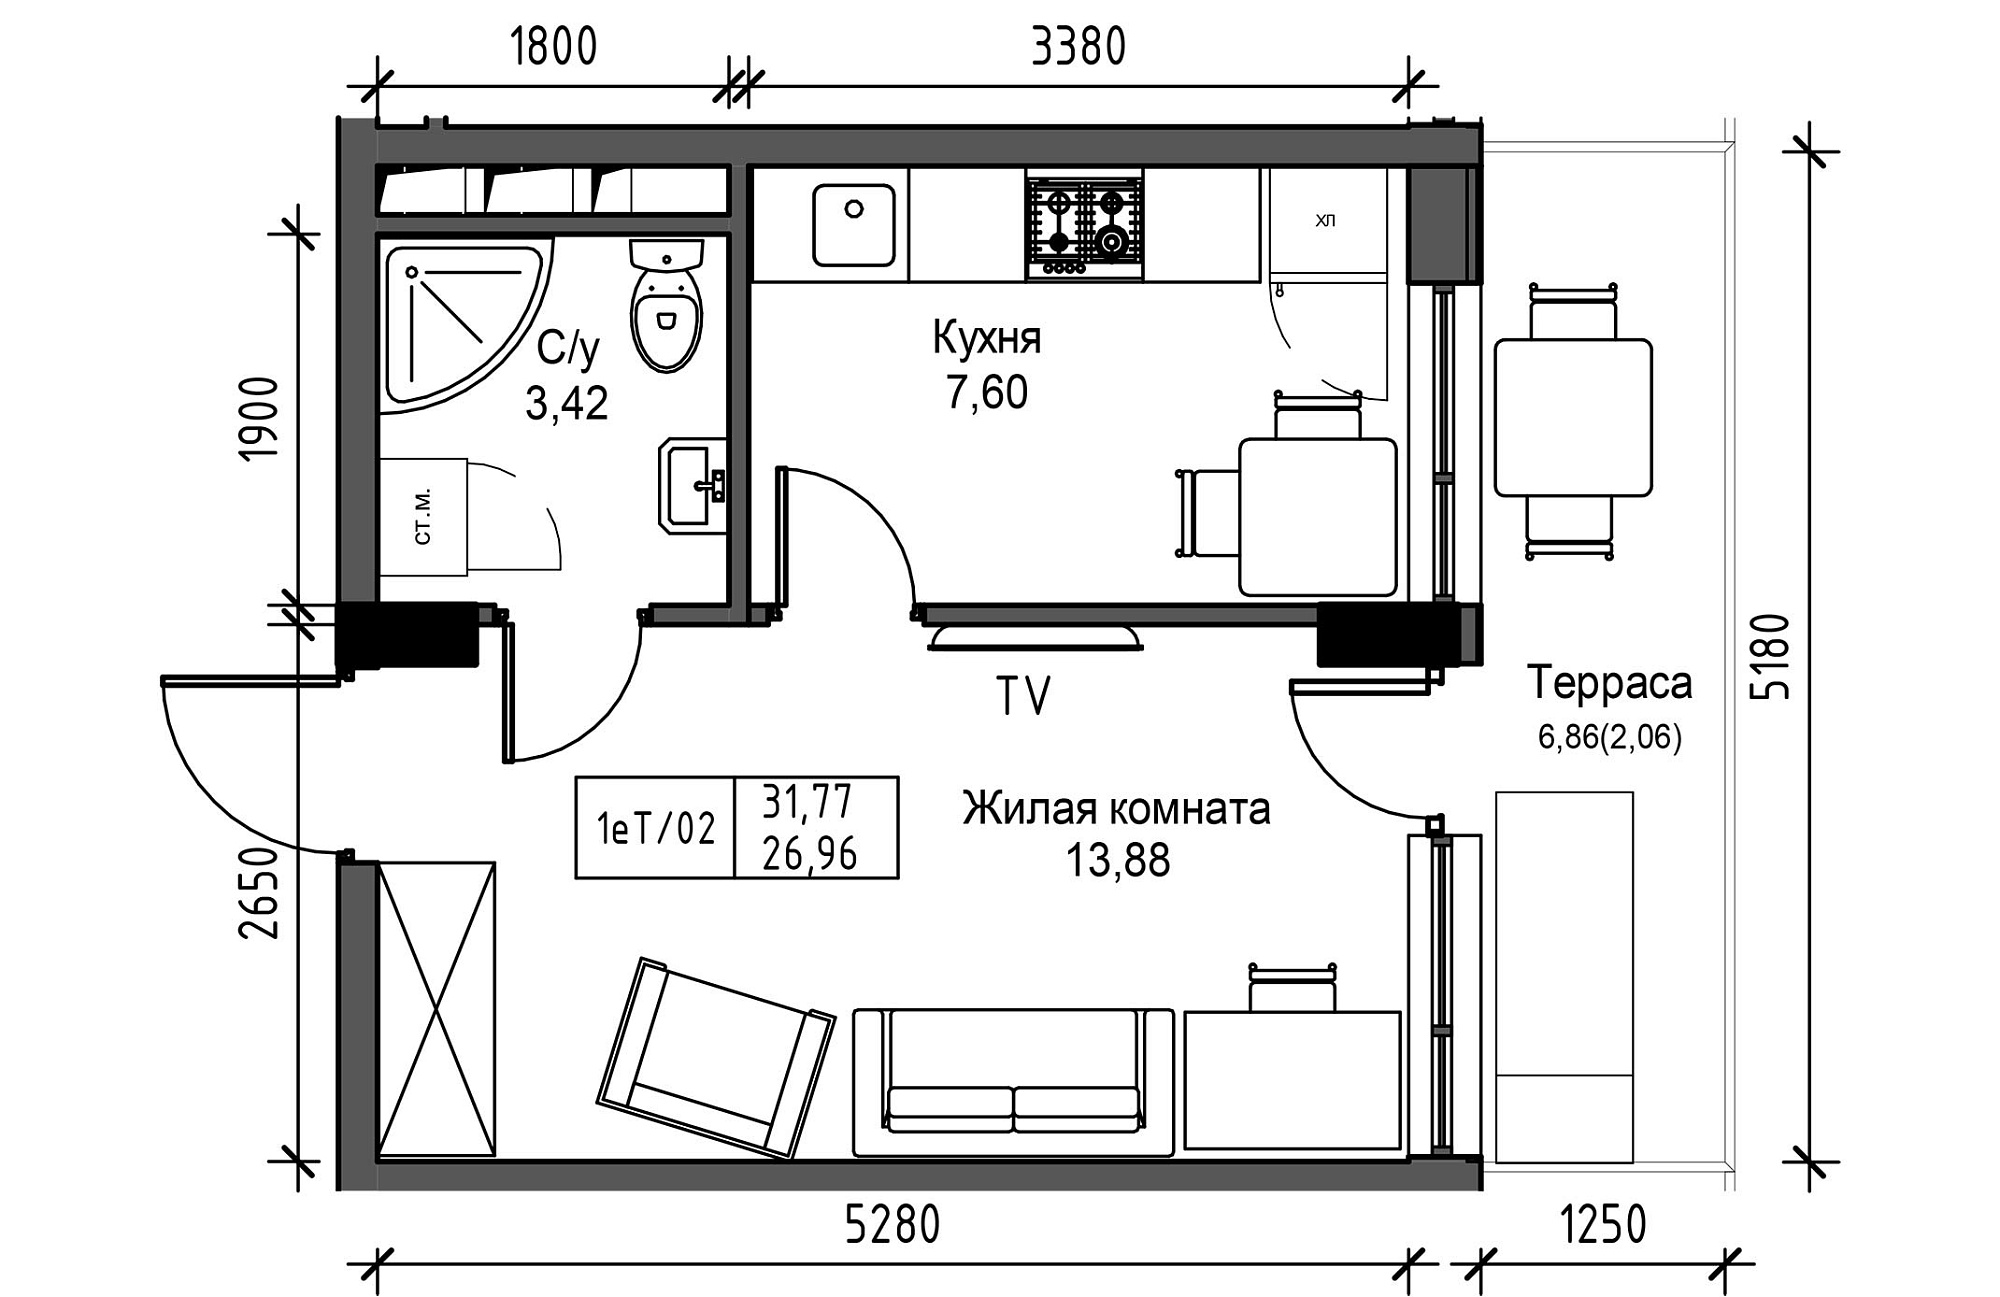 Планировка 1-к квартира площей 26.96м2, UM-003-11/0113.